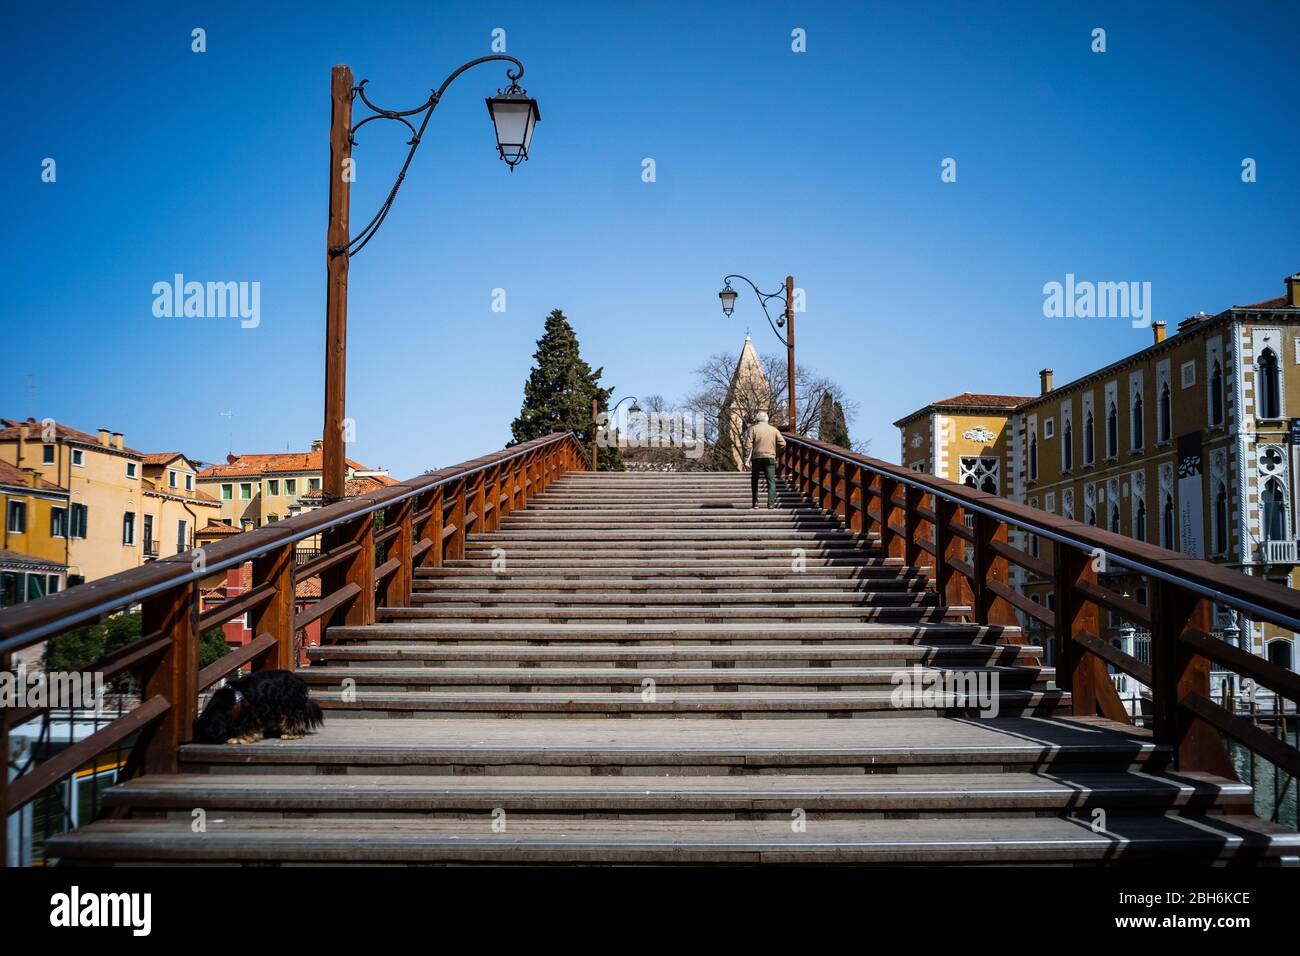 VENEZIA, ITALIA - APRILE 2020: Un uomo attraversa un ponte vuoto dell'Accademia durante la chiusura nazionale per la pandemia di Covid-19. Foto Stock